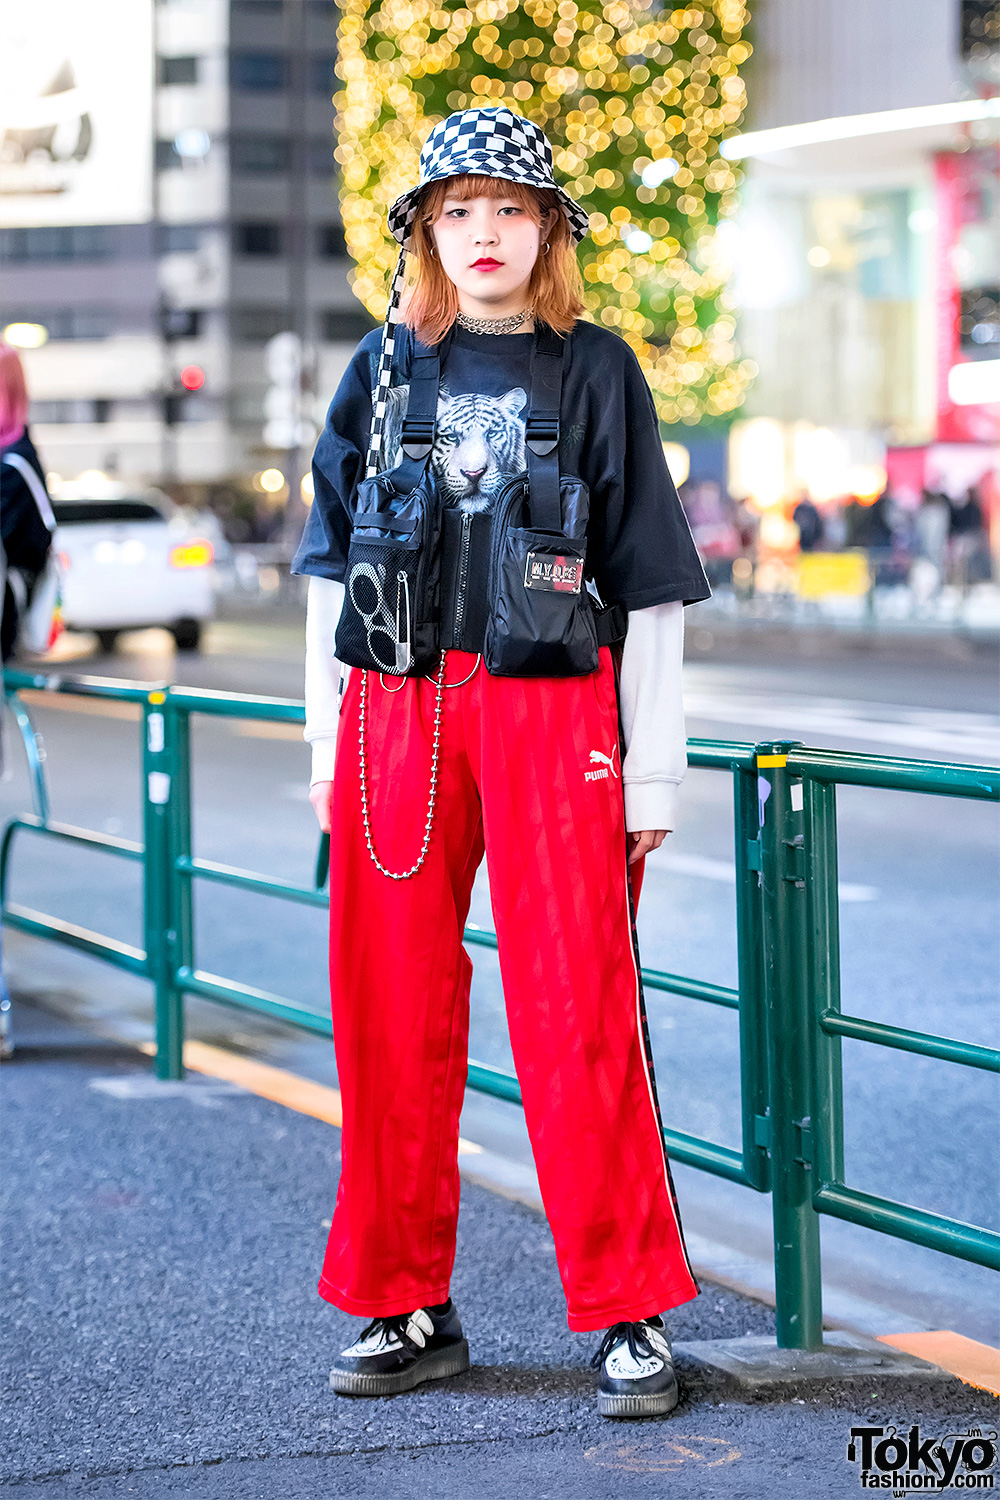 Harajuku Girl in MYOB NYC Vest, Puma Pants, Checkerboard Bucket Hat & Creepers